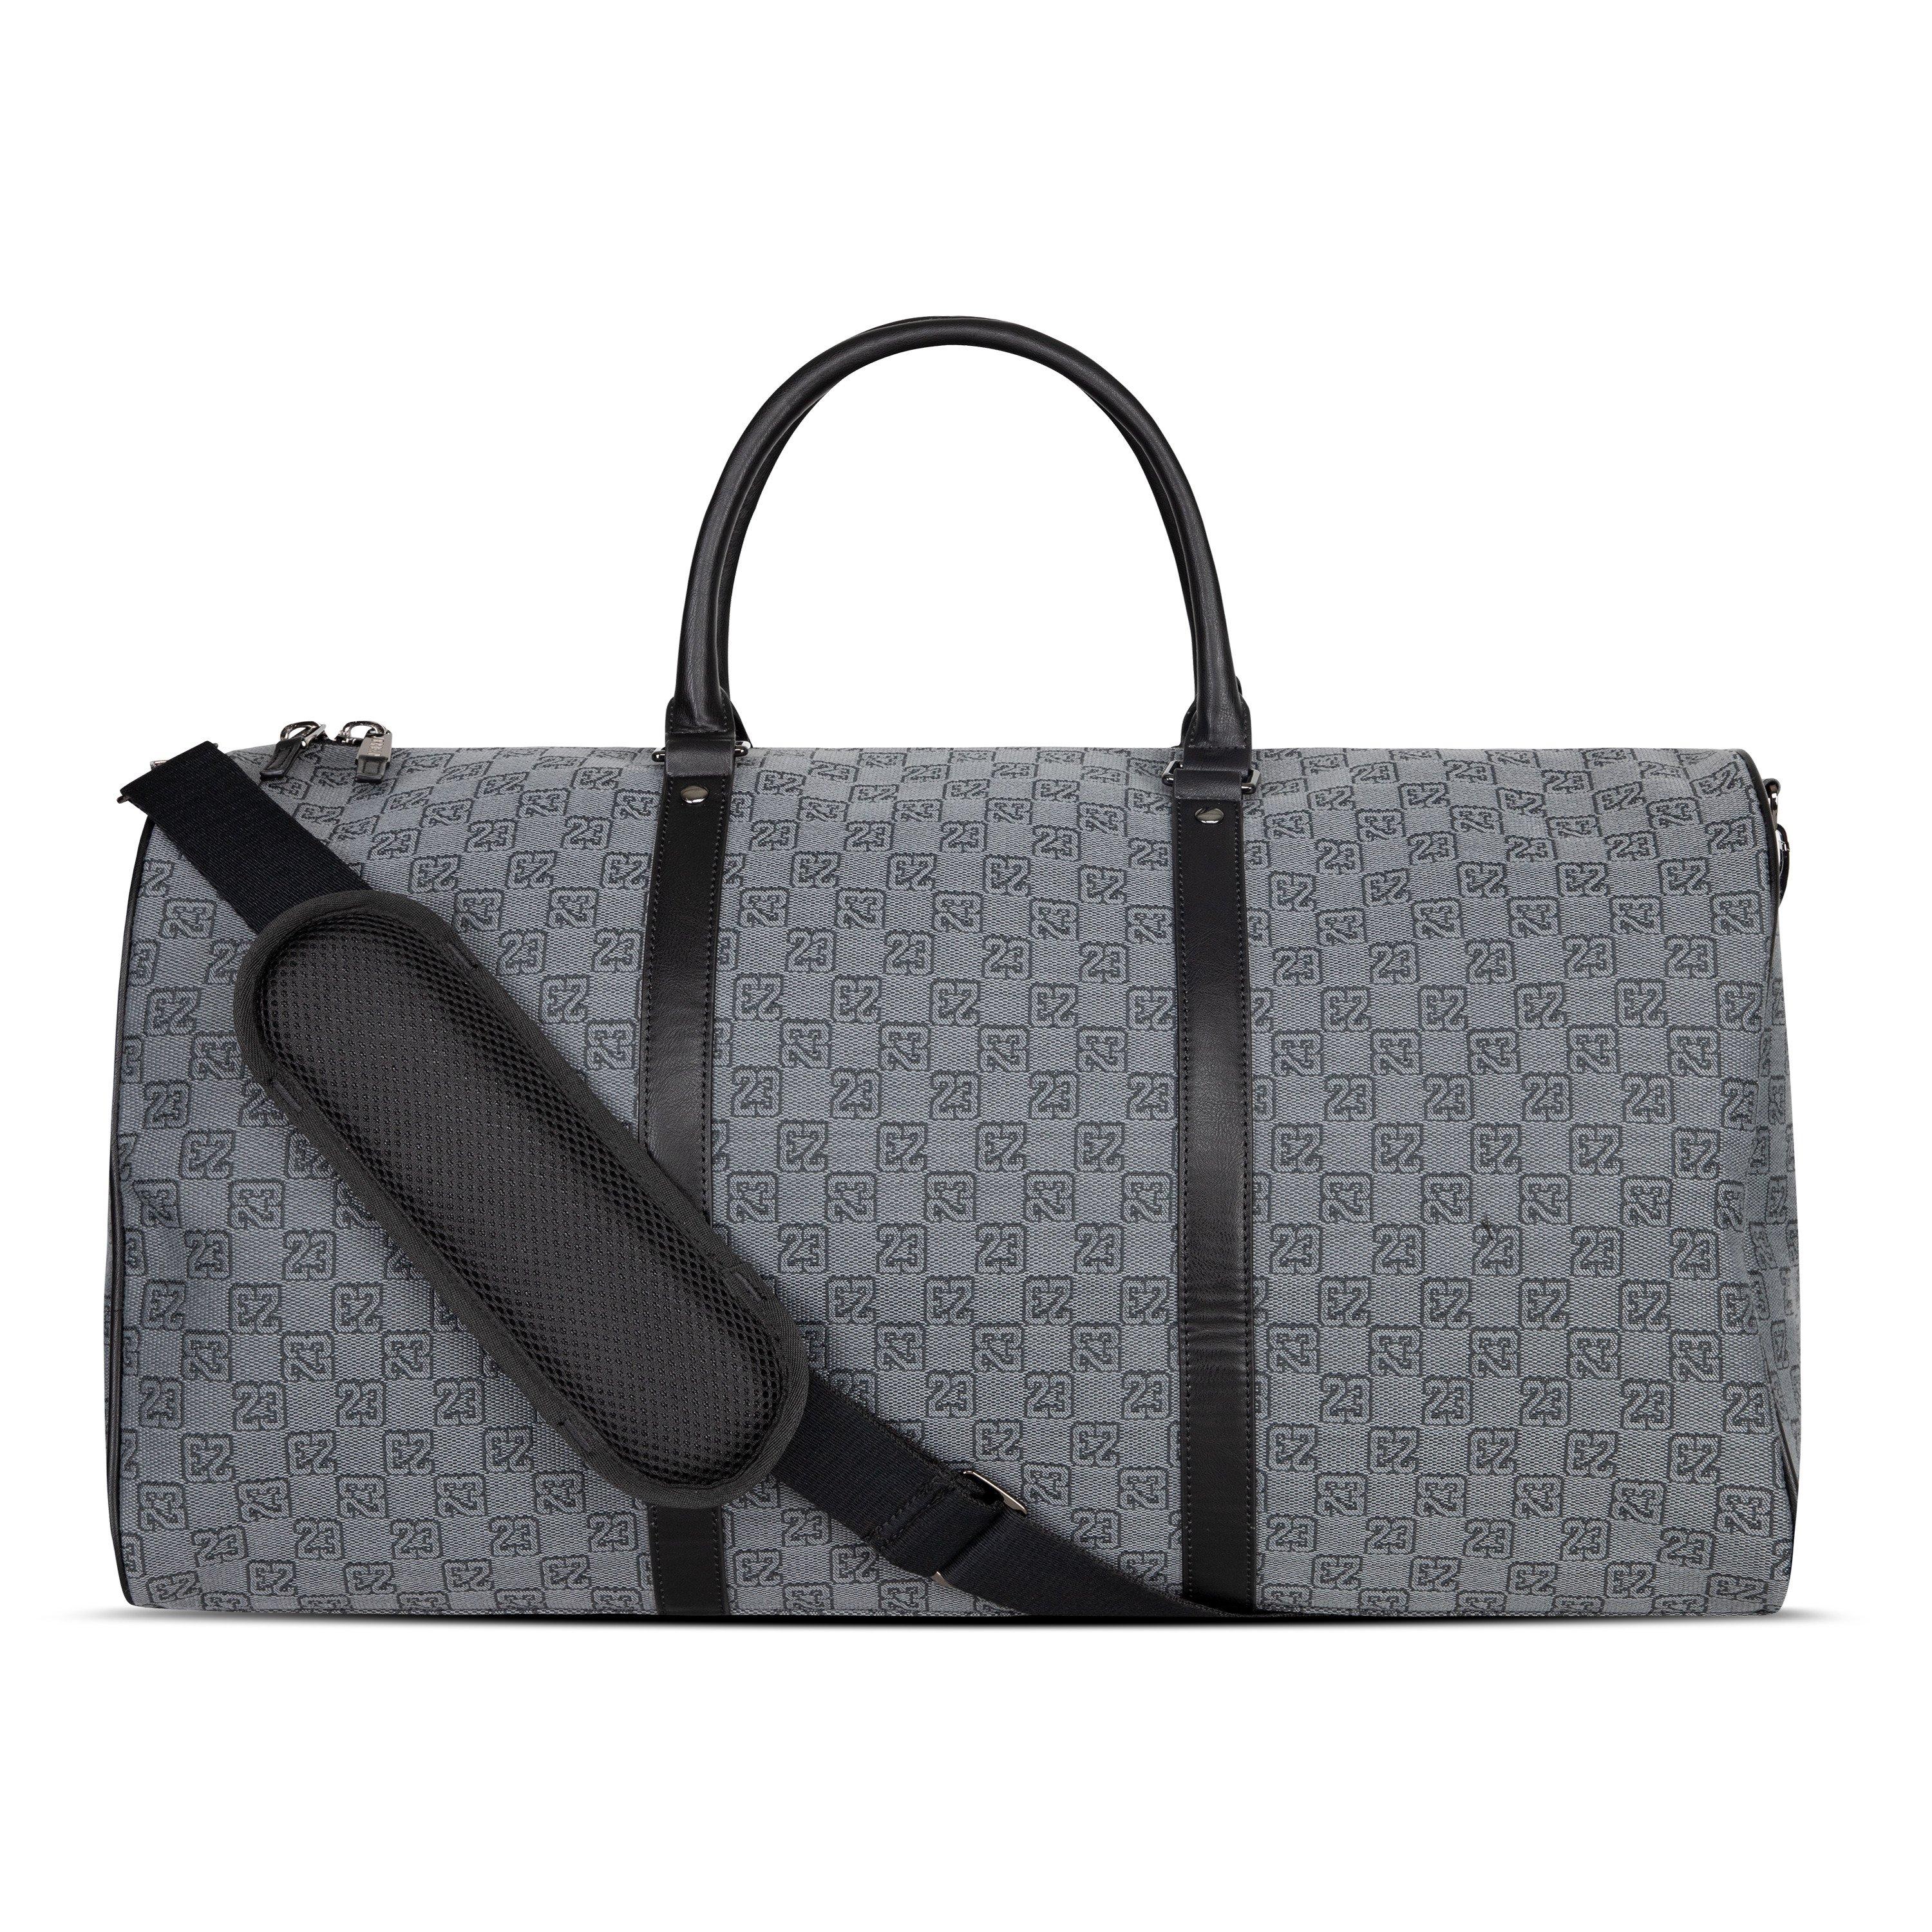 Jordan Monogram Duffle Bag - Black/Grey